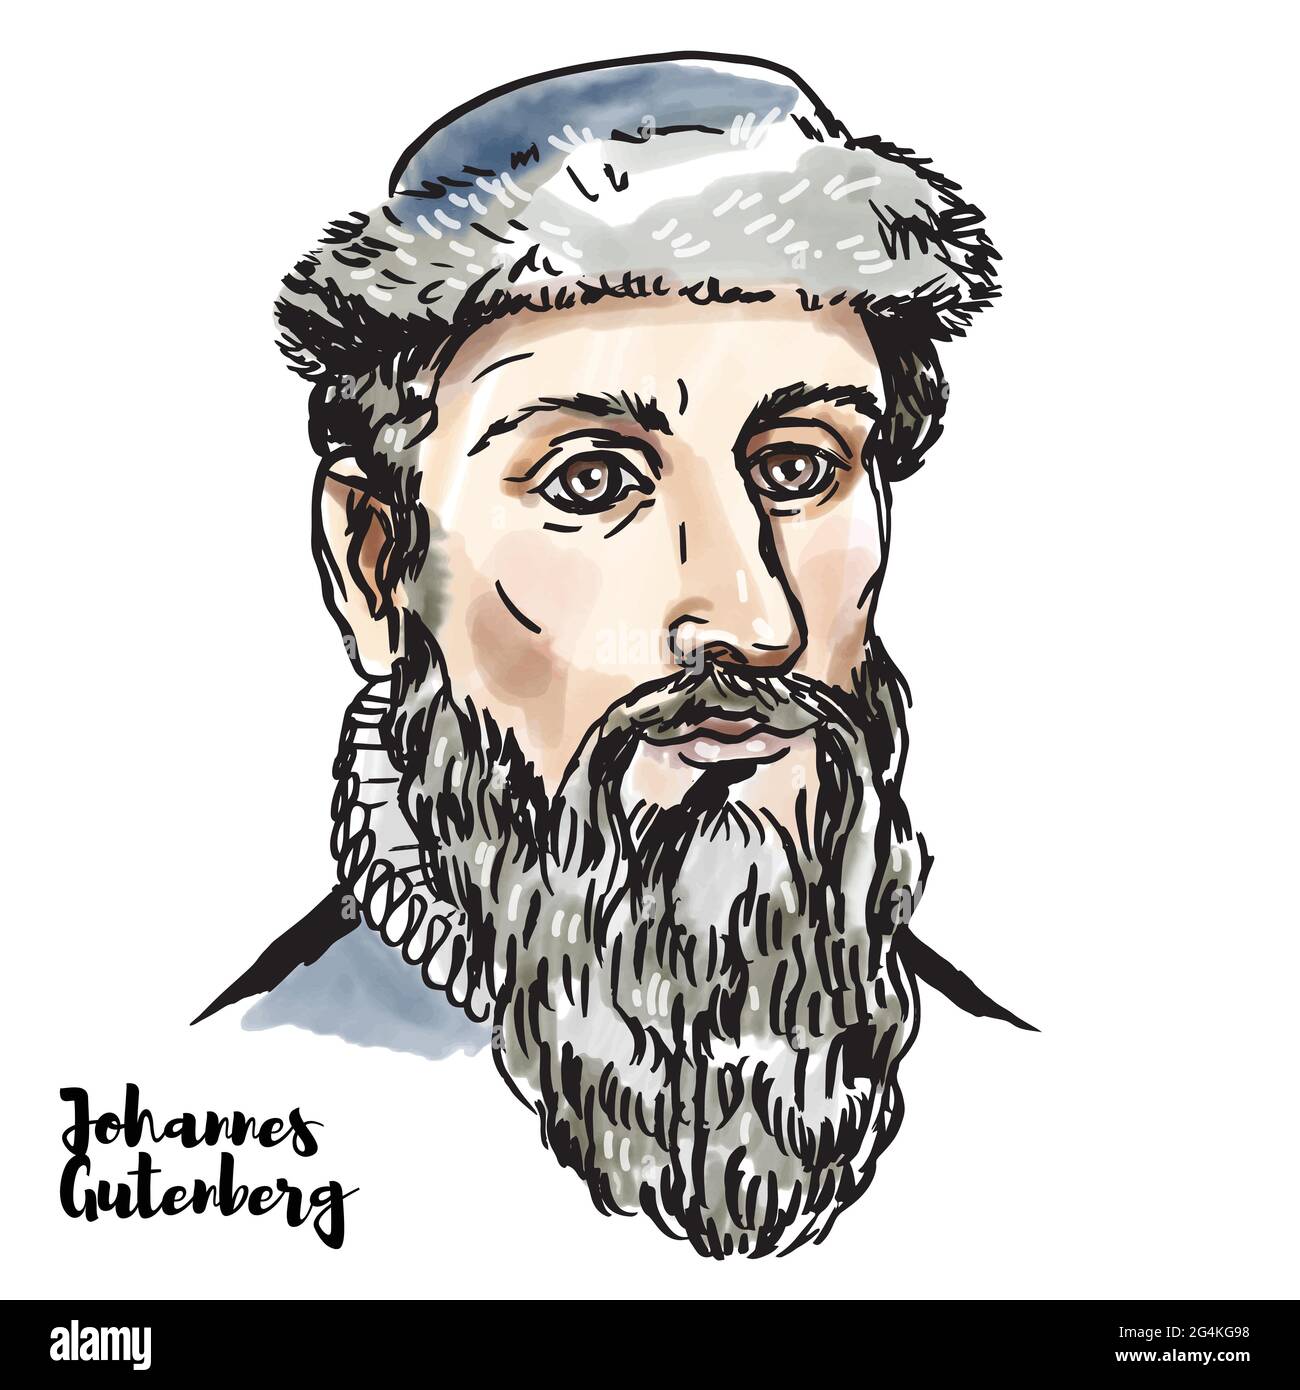 Johannes Gutenberg Portrait vectoriel en aquarelle gravé avec contours encreurs. Forgeron allemand, orfèvre, inventeur, imprimeur, et éditeur qui présente Illustration de Vecteur